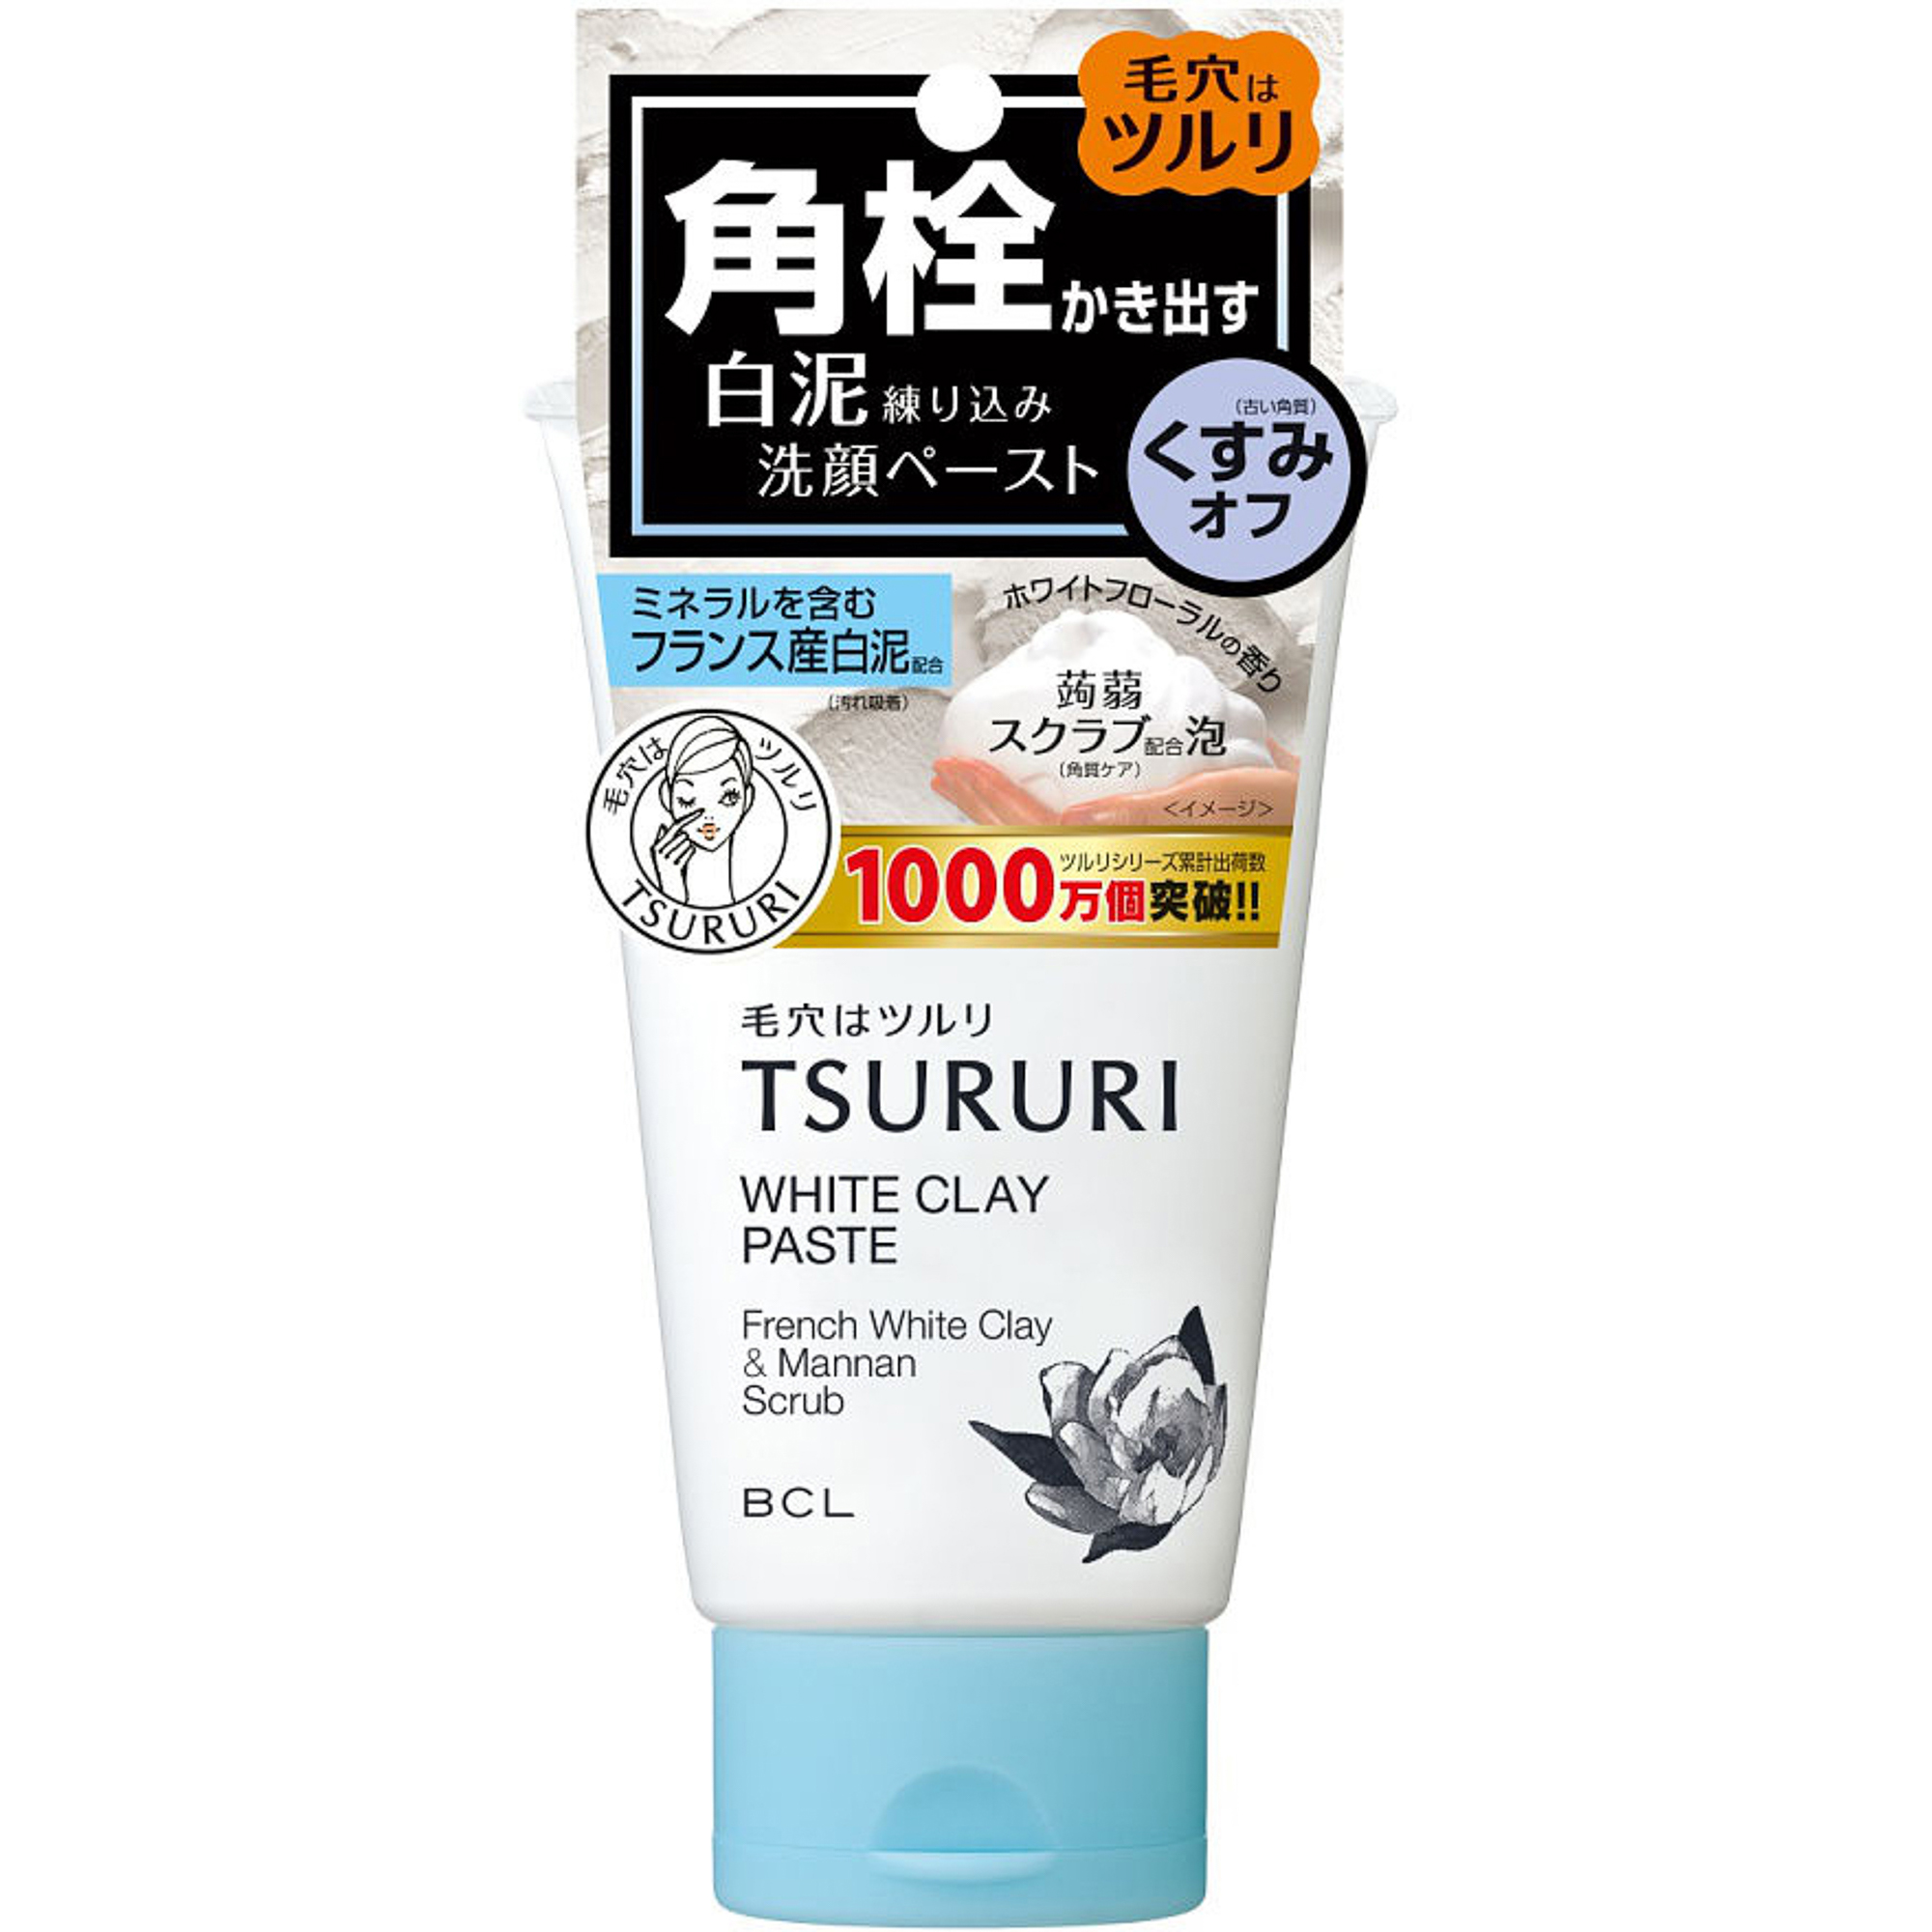 Пенка-скраб Tsururi для глубокого очищения кожи с французской белой глиной и японским маннаном 120 г